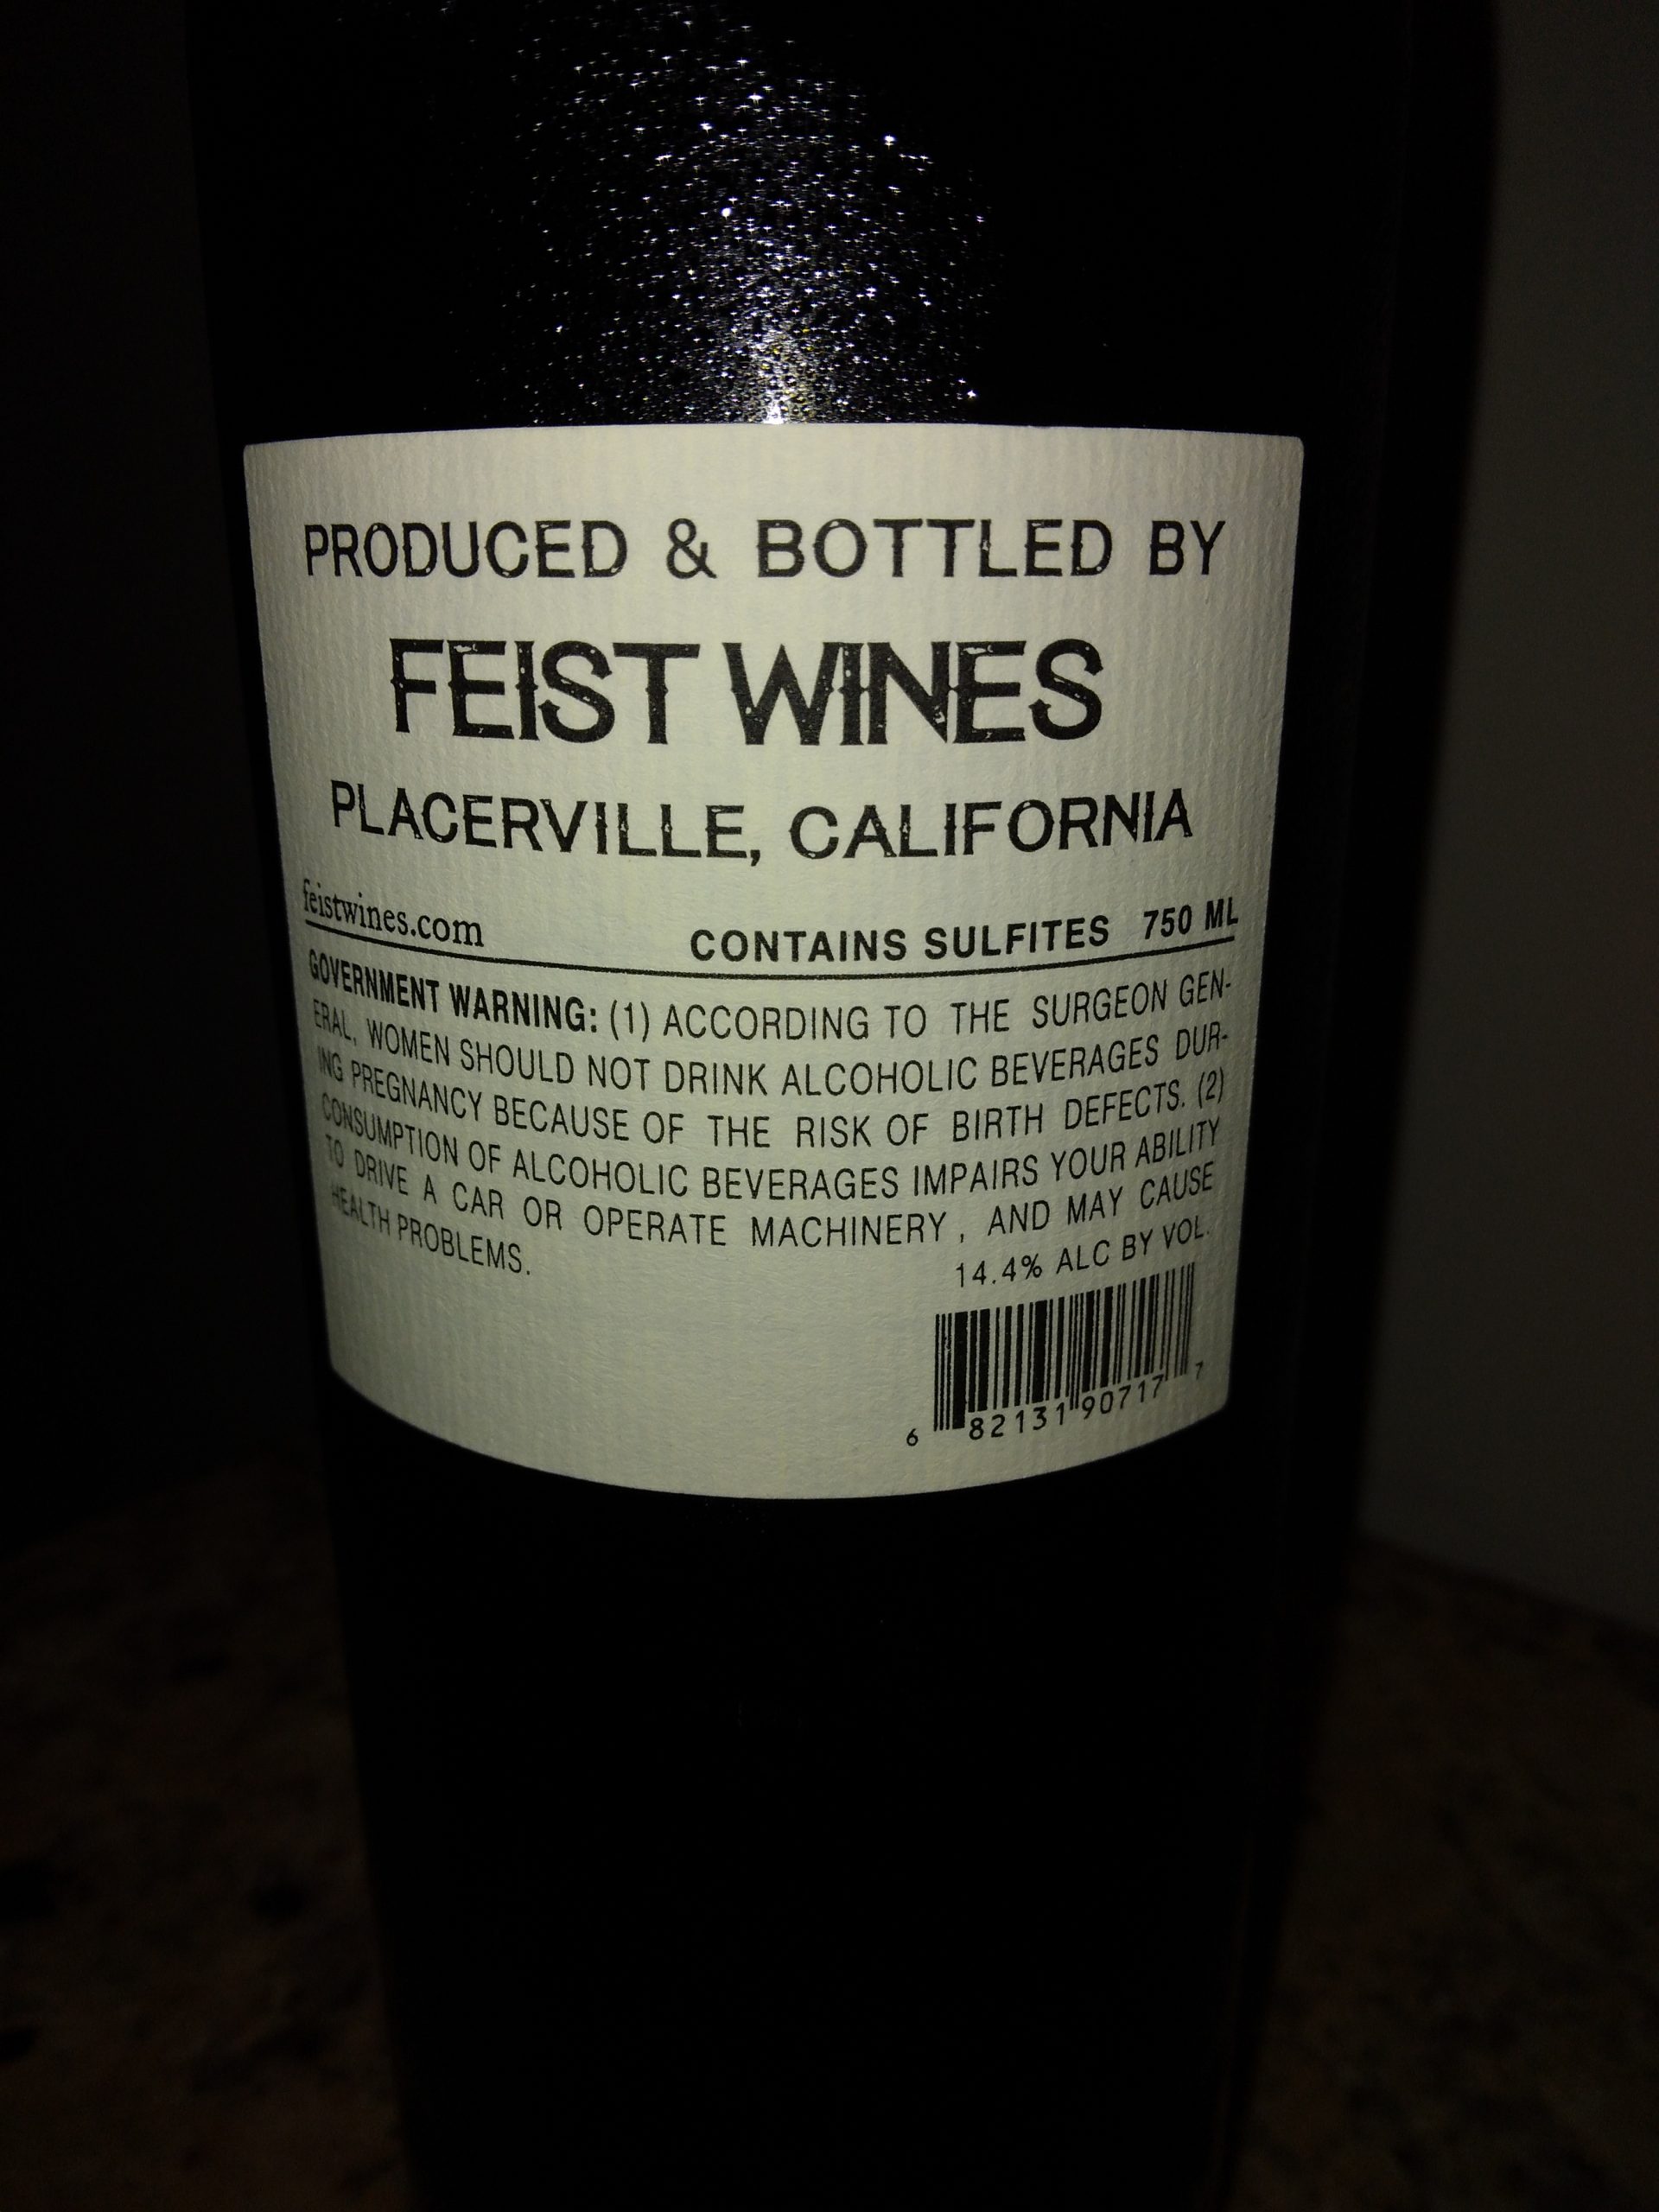 Feist Wines feisty wine bottle back